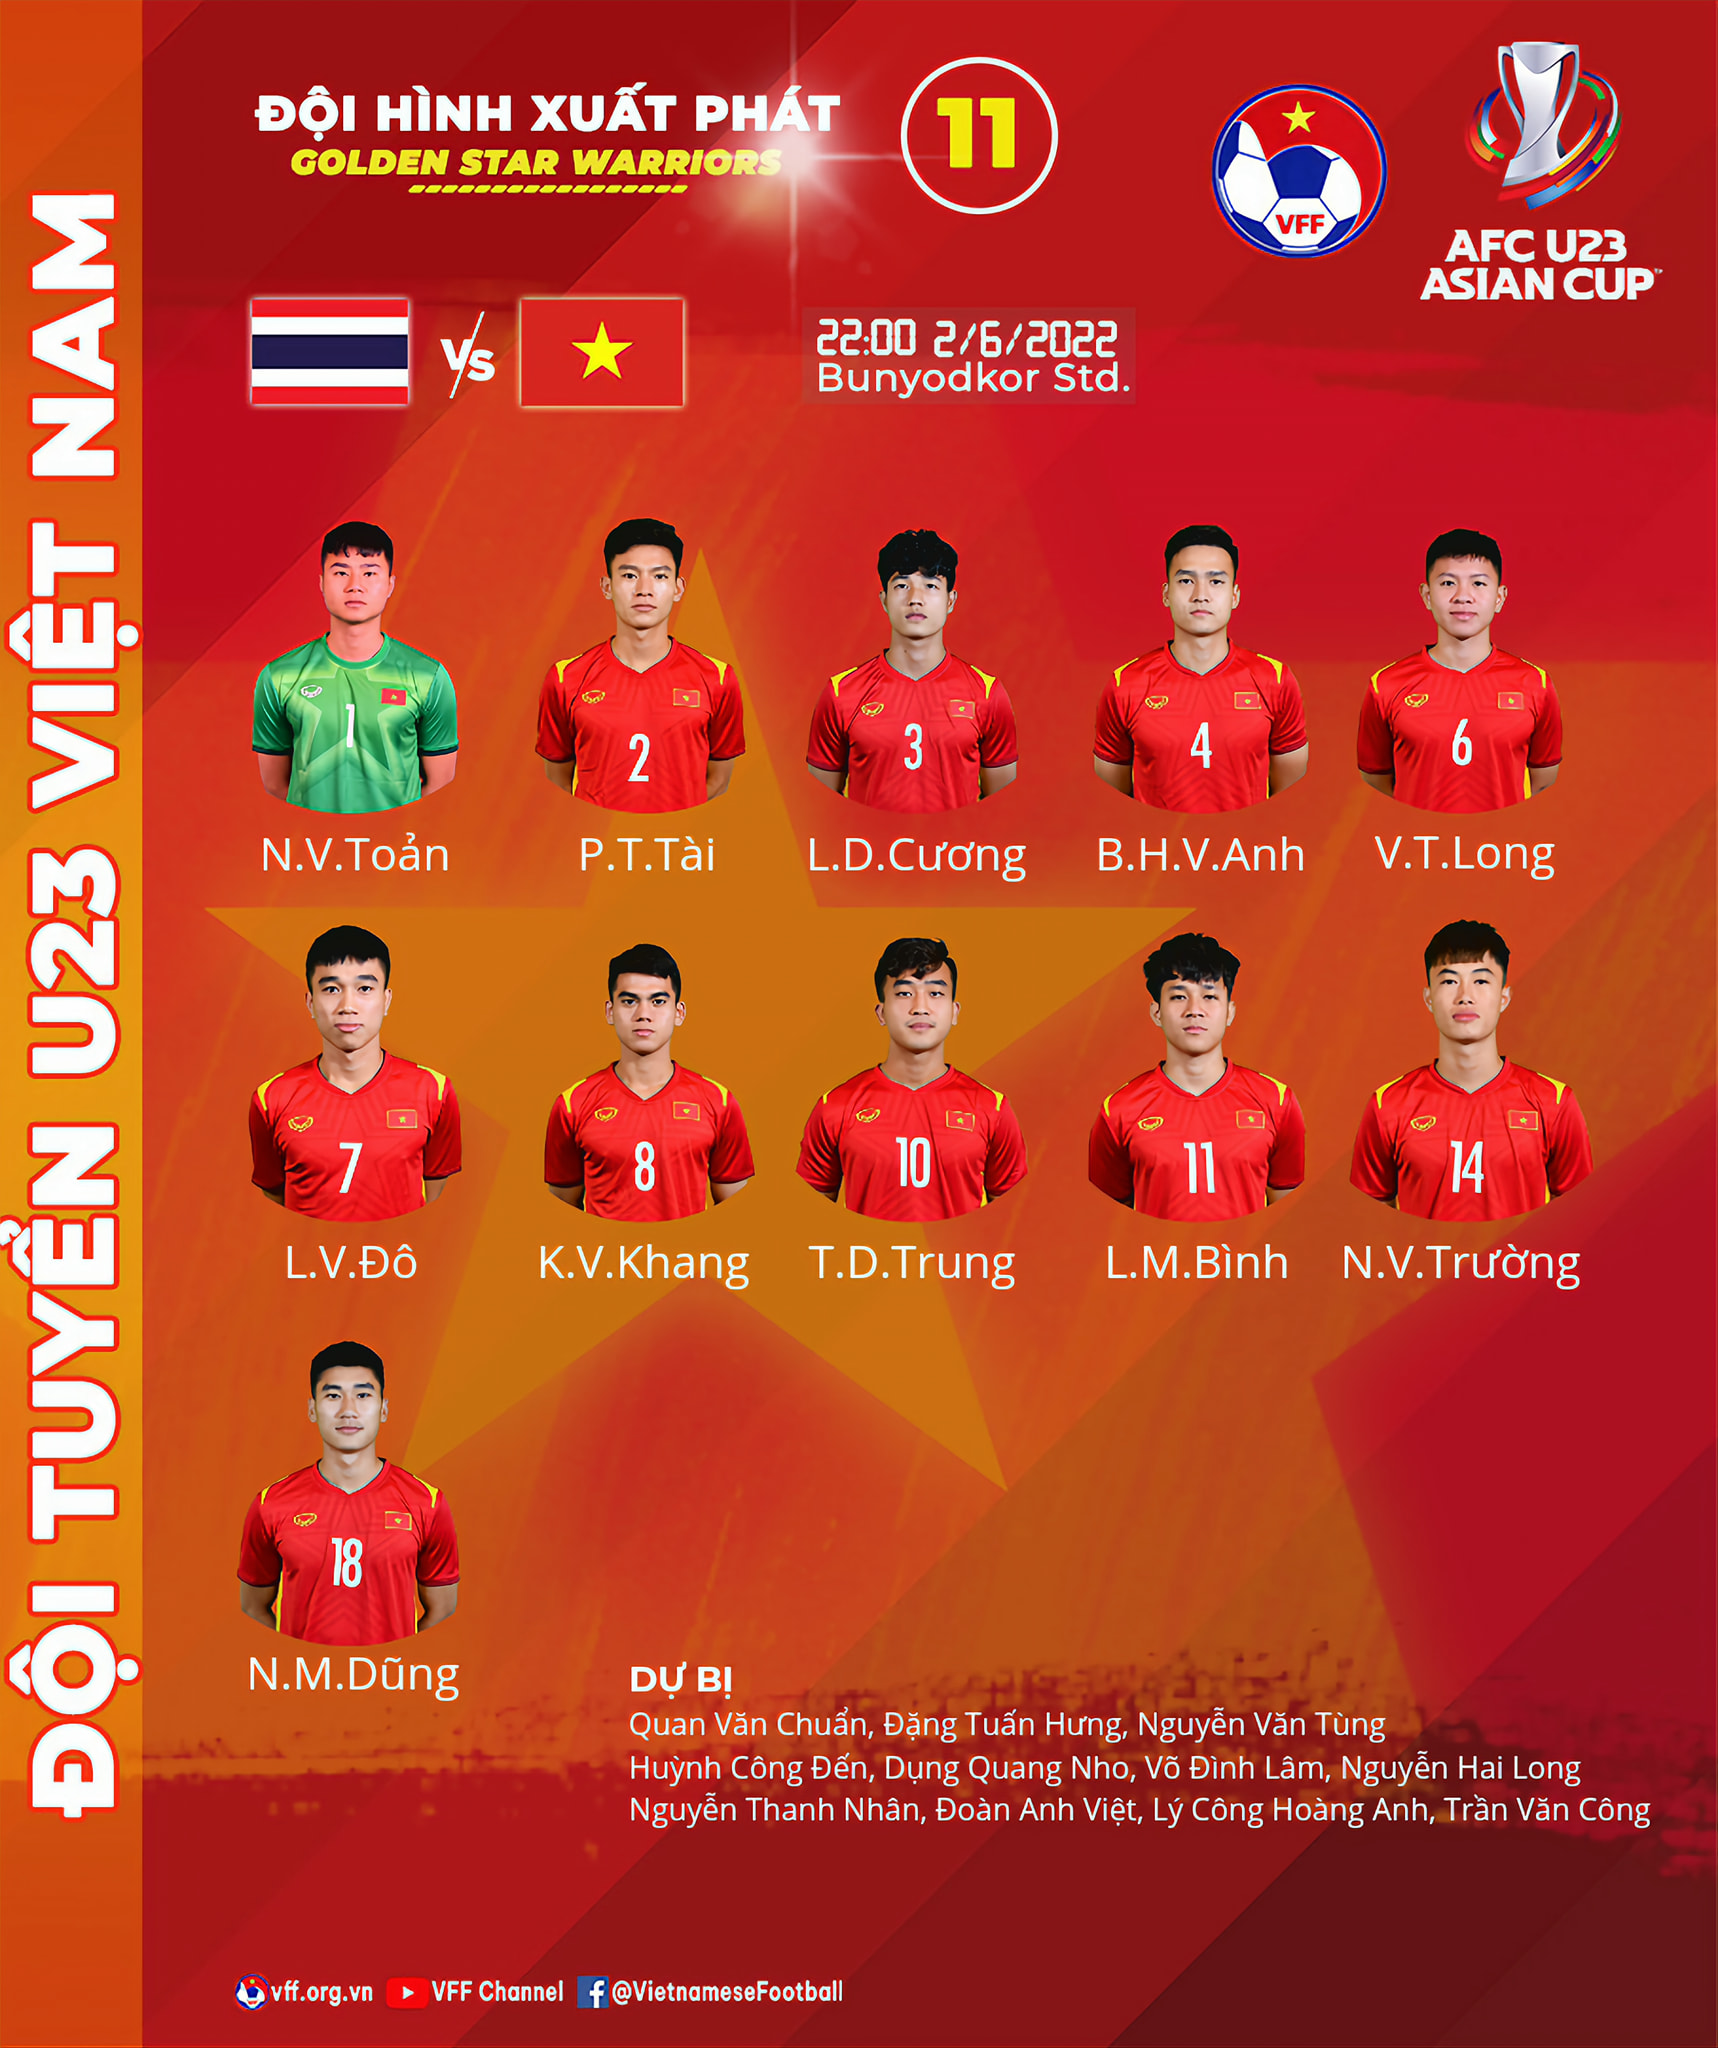 Xem hình ảnh của đội tuyển U23 Việt Nam, đầy truyền cảm hứng và sự kiên trì để đạt đến những mục tiêu trong thi đấu. Đây là một kỷ niệm đáng nhớ, đại diện cho sự ra sân và đấu tranh của toàn bộ quốc gia.